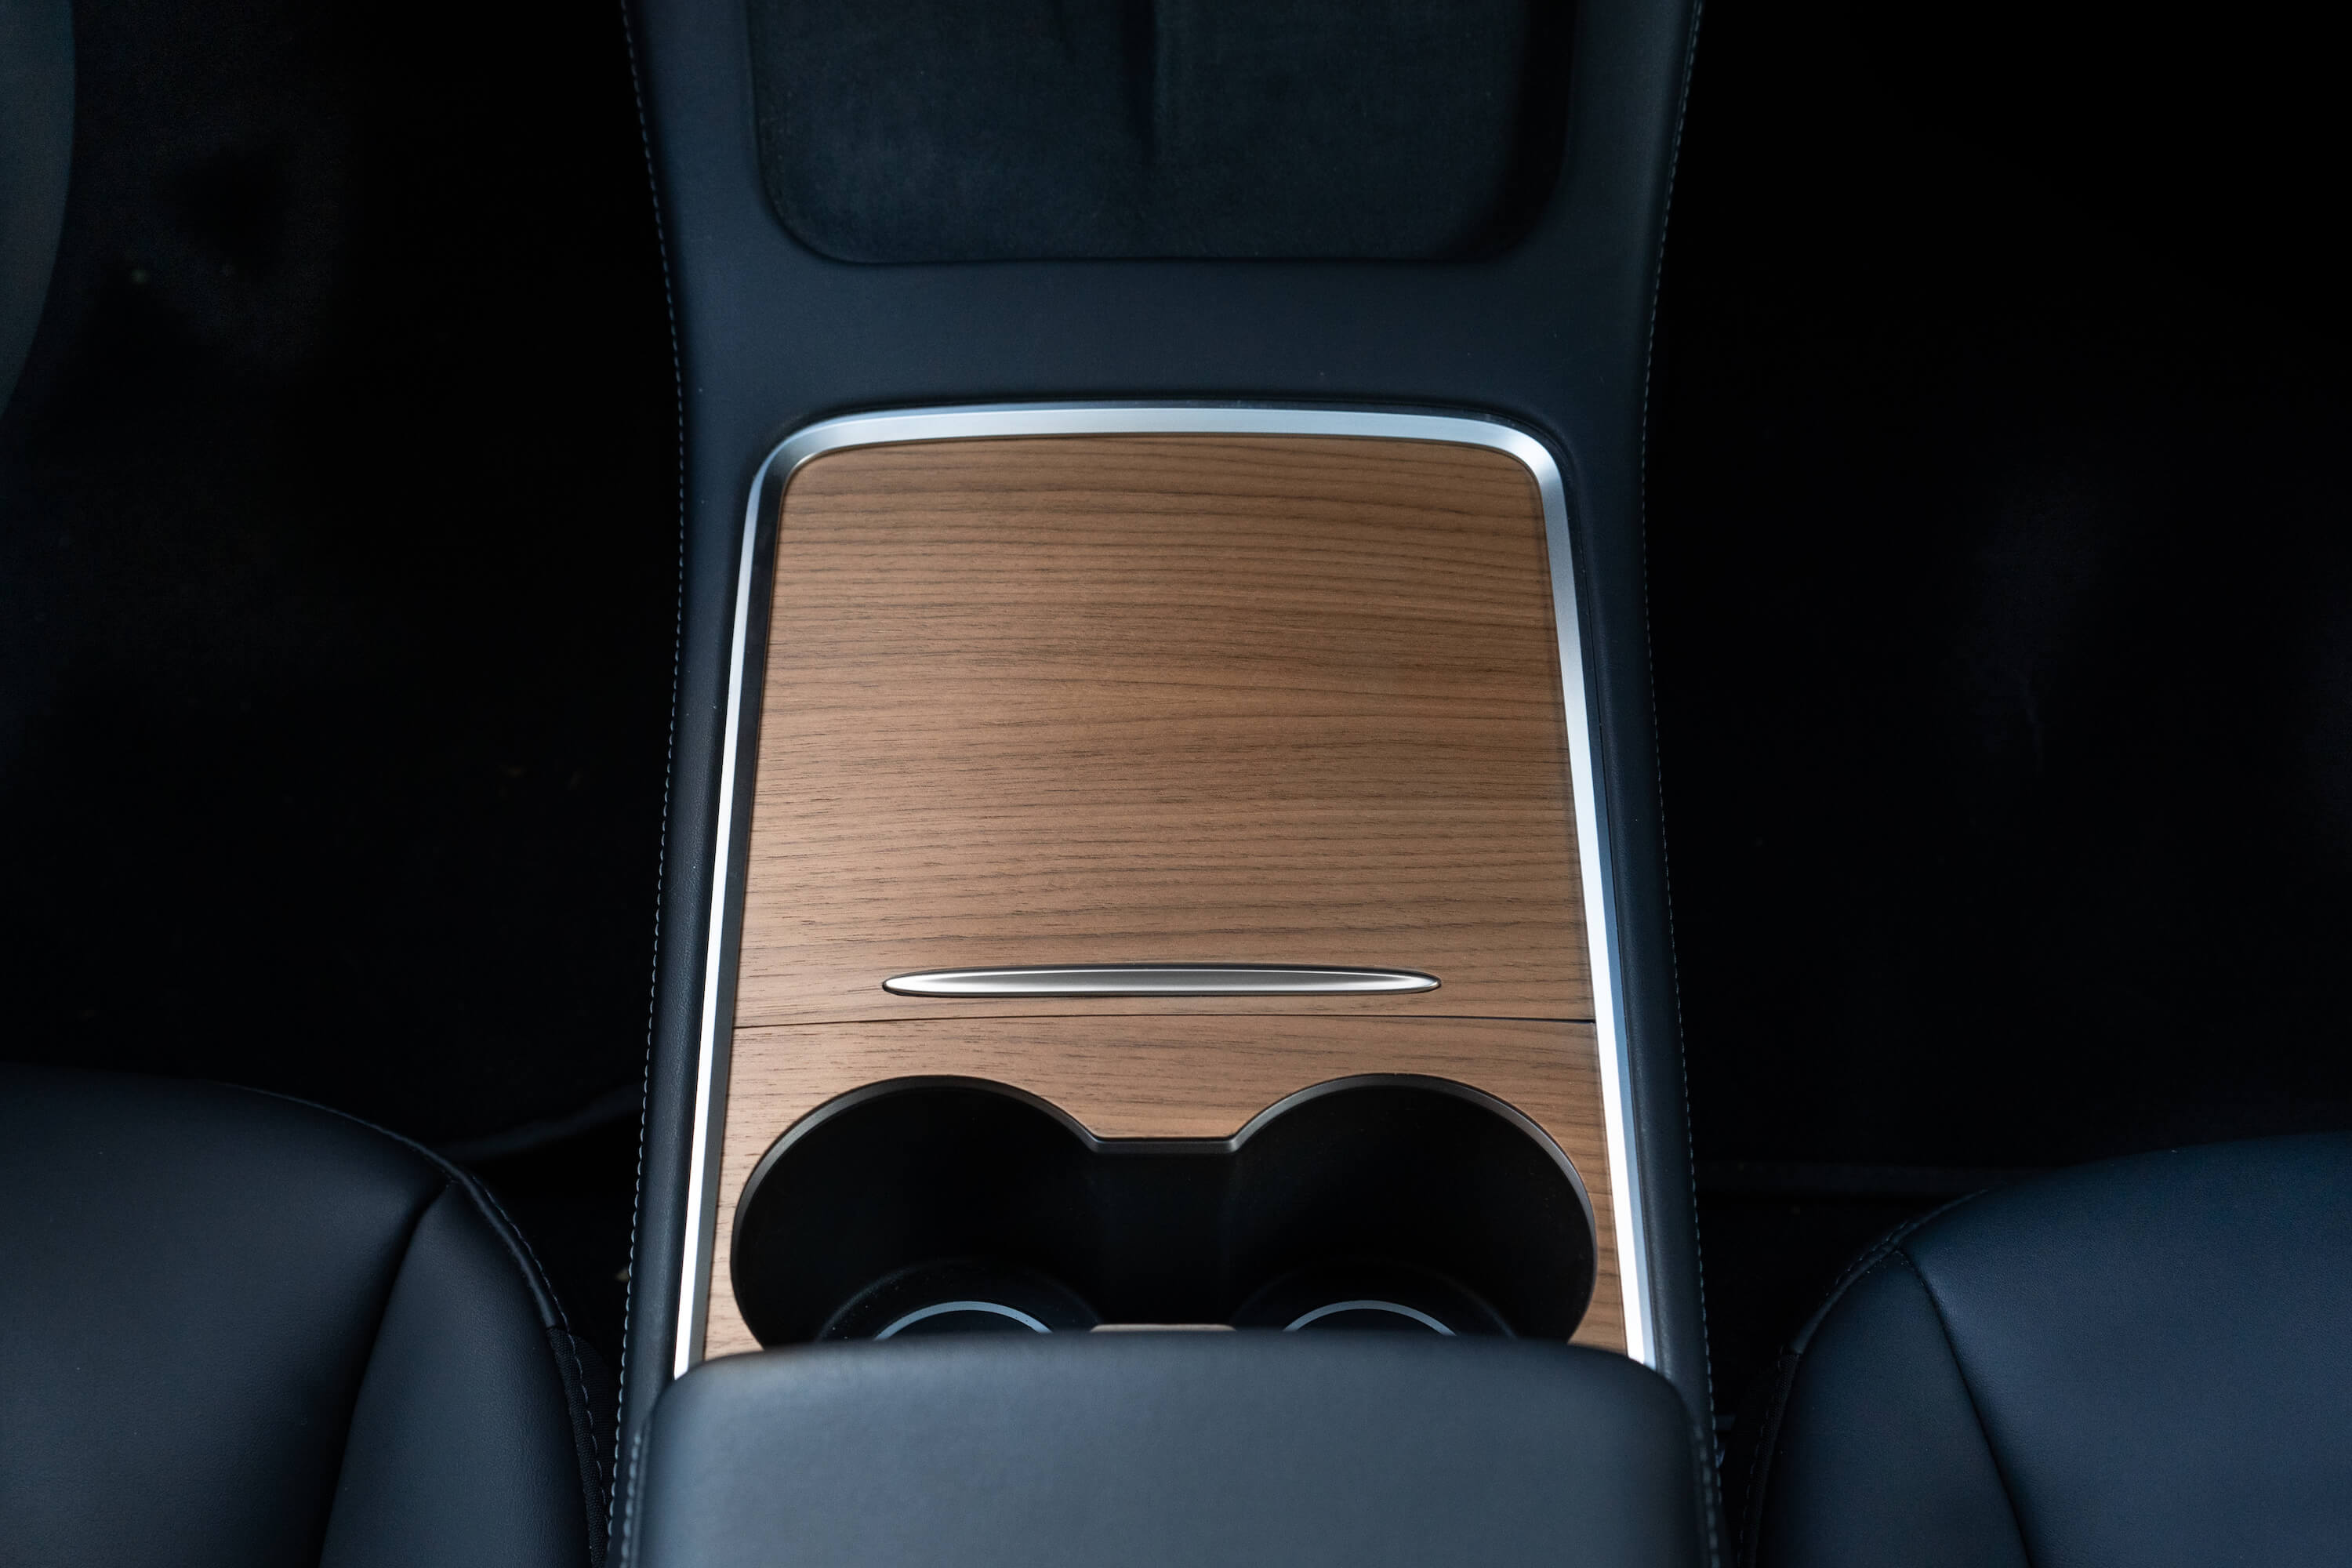 Couverture de console centrale en bois pour Tesla Model 3 & Model Y, Gen. 2  – Hills